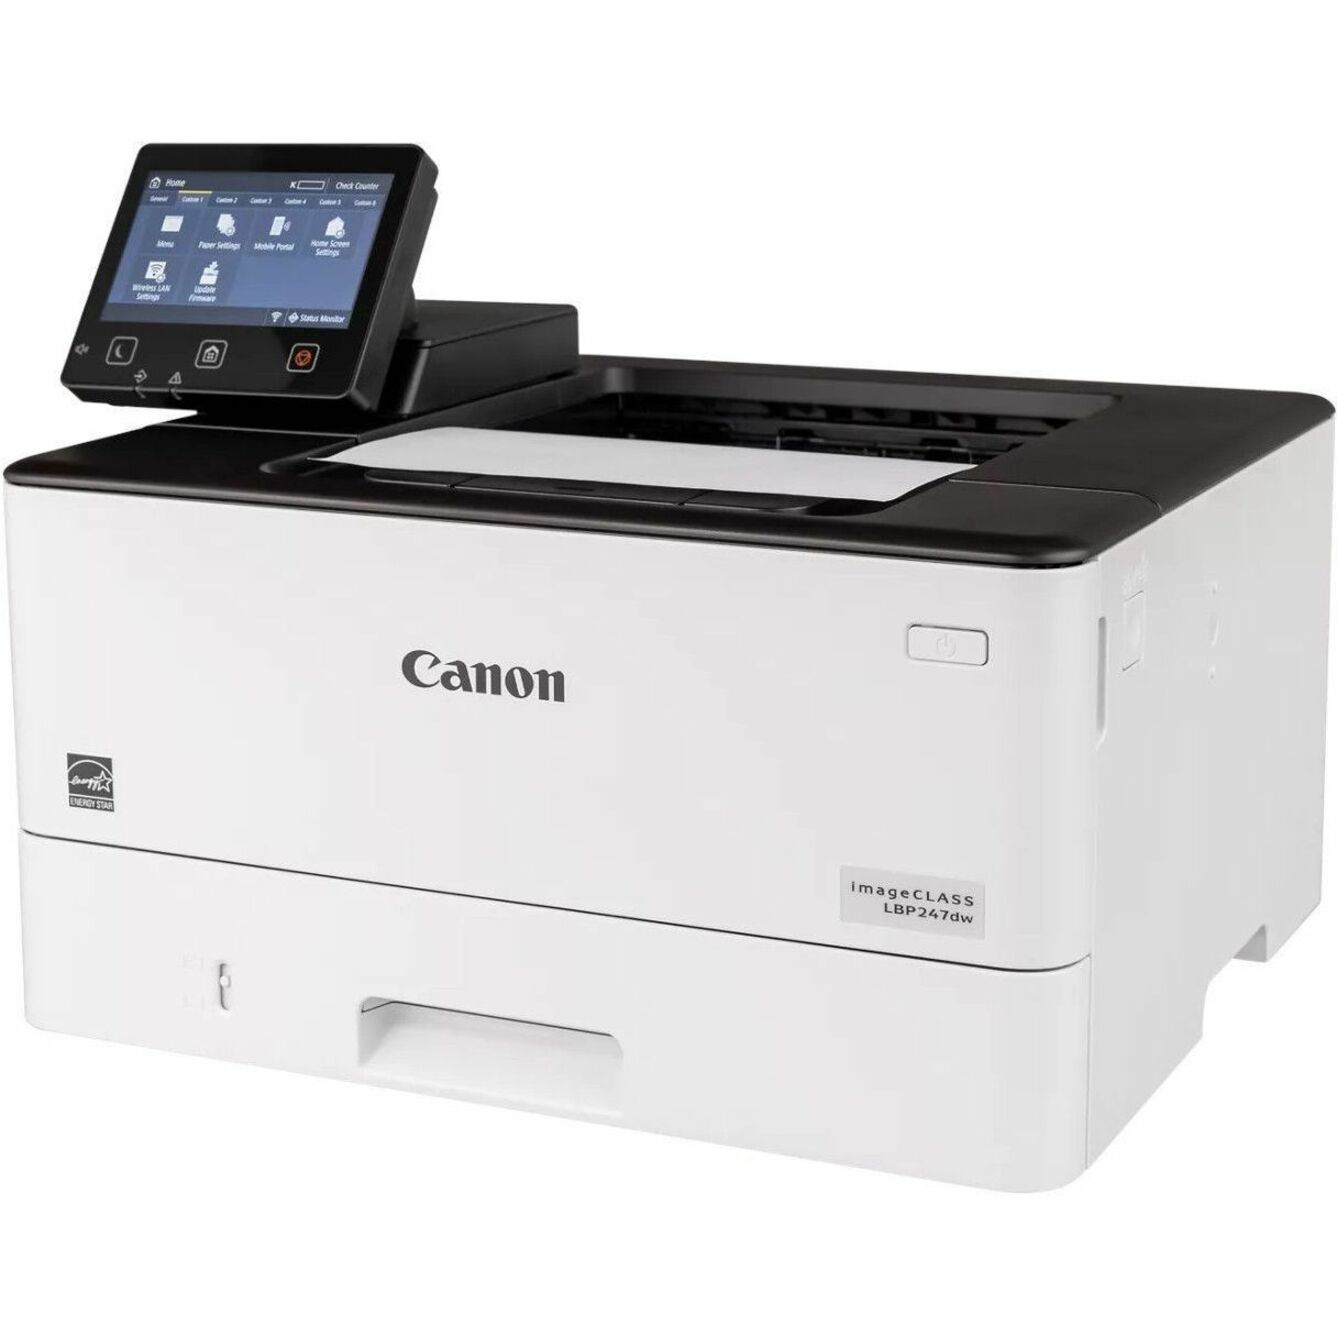 Canon Impresora láser inalámbrica imageCLASS LBP247DW 5952C004 monocromo impresión a doble cara